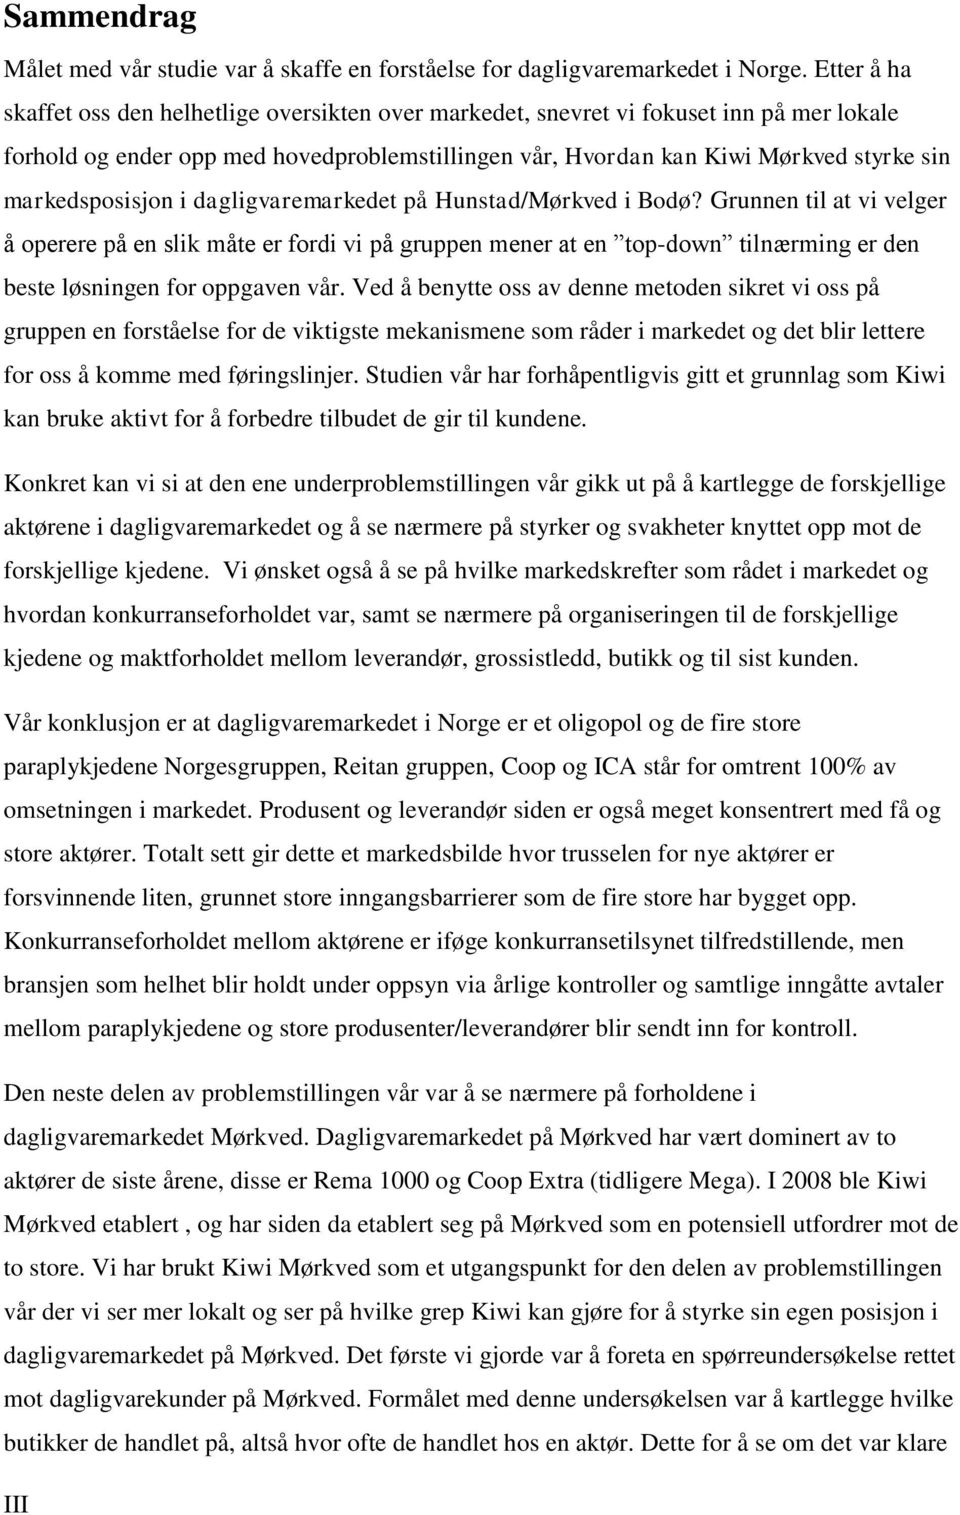 markedsposisjon i dagligvaremarkedet på Hunstad/Mørkved i Bodø?